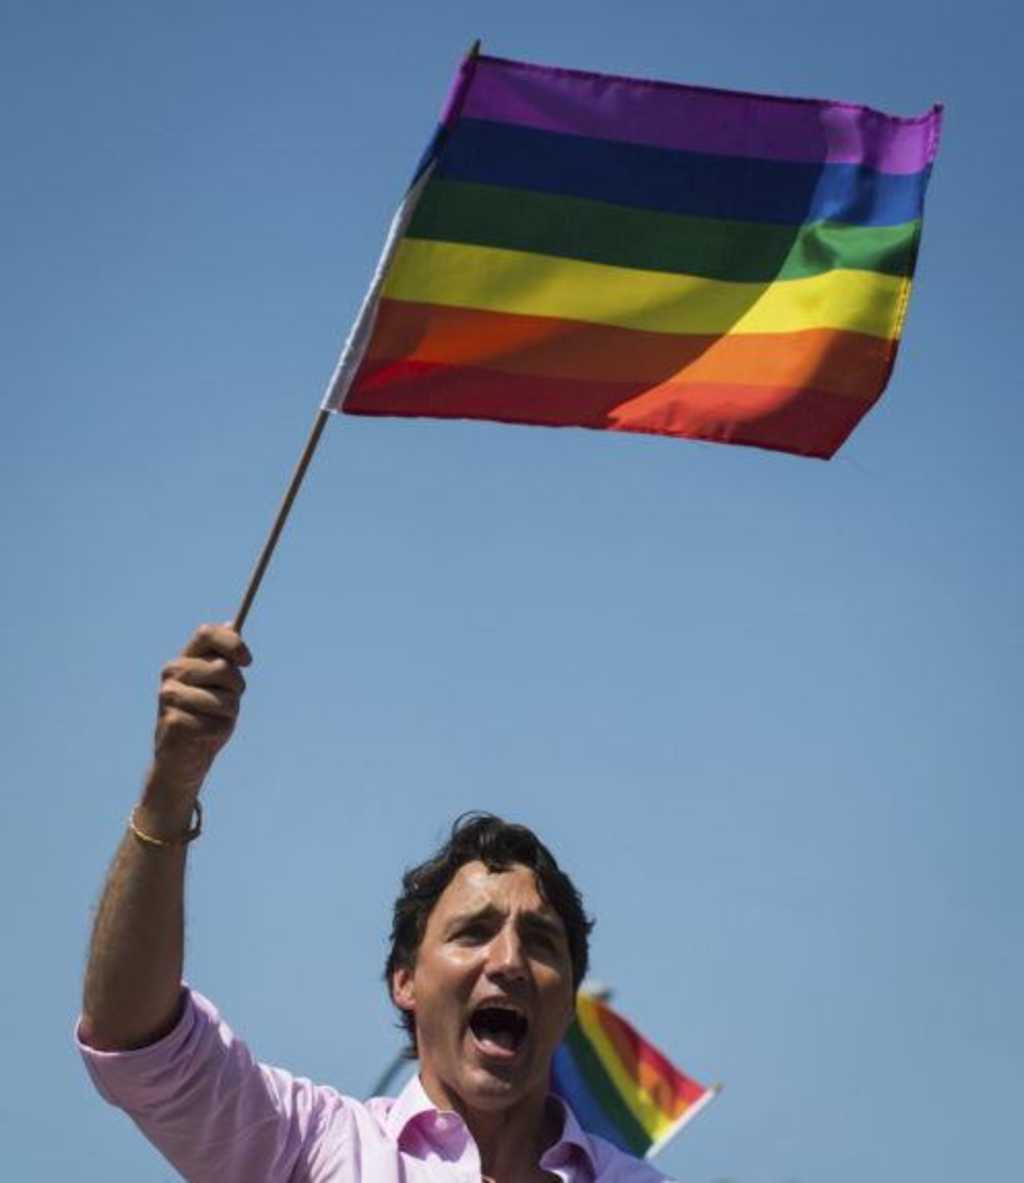 Kanada zakázala konverzné terapie, ktoré mali liečiť homosexualitu